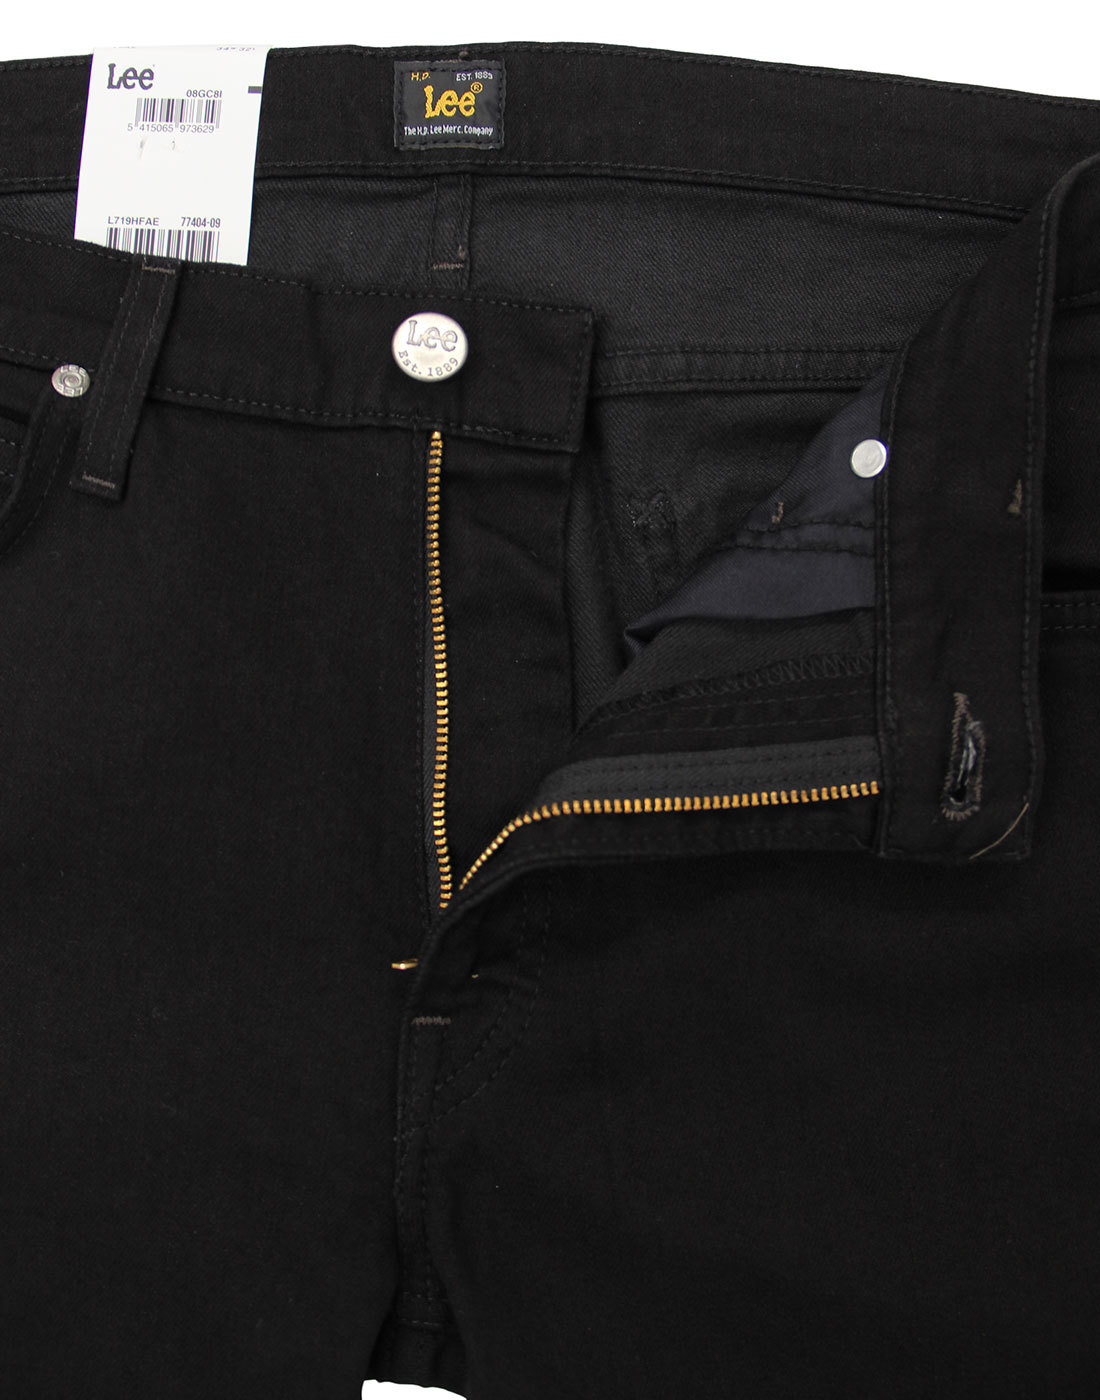 LEE Luke Men's Retro Mod Slim Tapered Denim Jeans in Clean Black